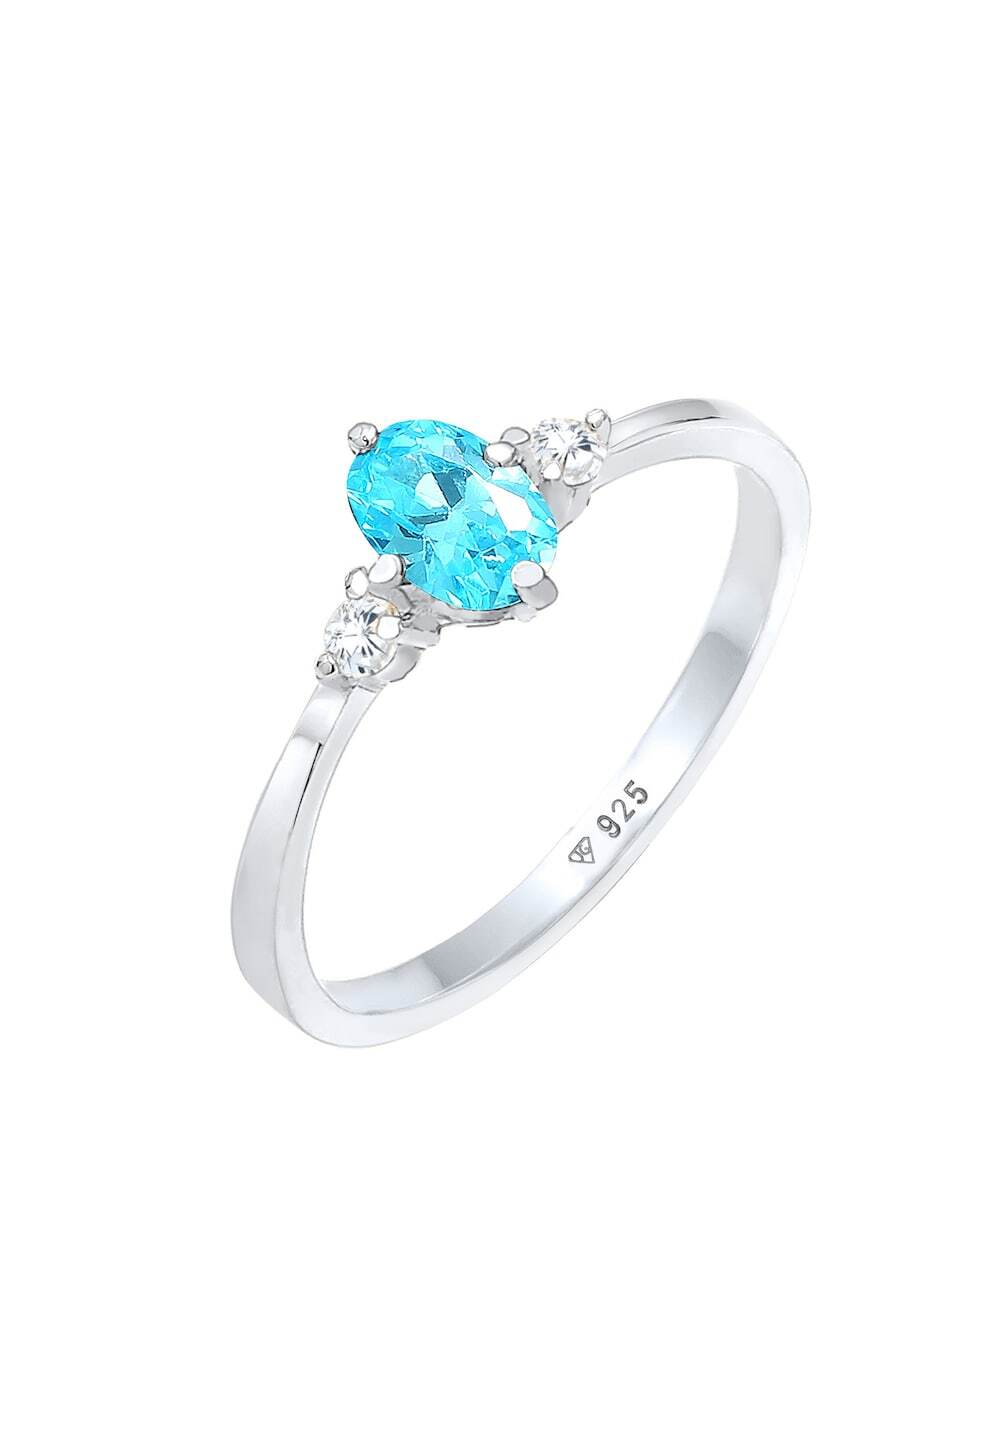 Elli Elli Elli Ring Dames Solitaire Blauwe Ovale Verloving met Zirkonia Kristallen in 925 Sterling Zilver Ringen